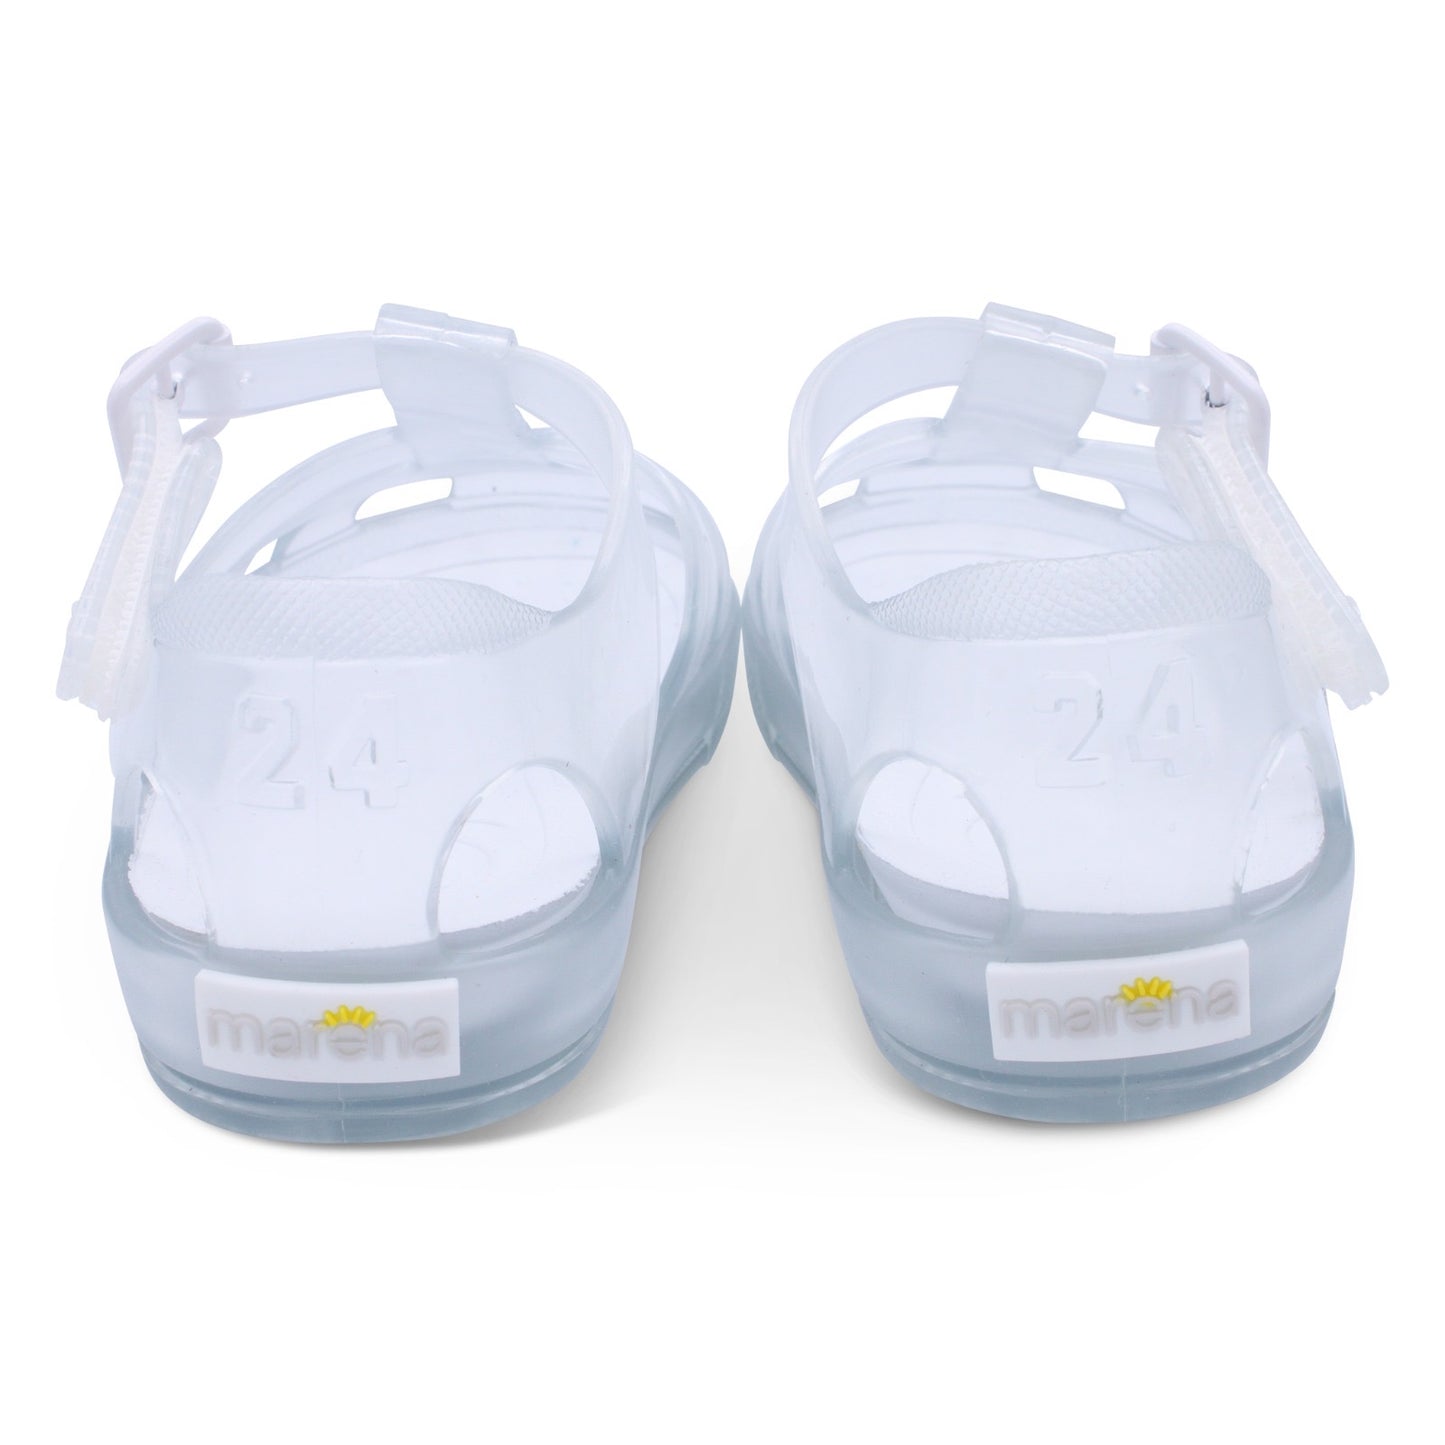 Children’s Summer jelly sandals - Adora Childrenswear